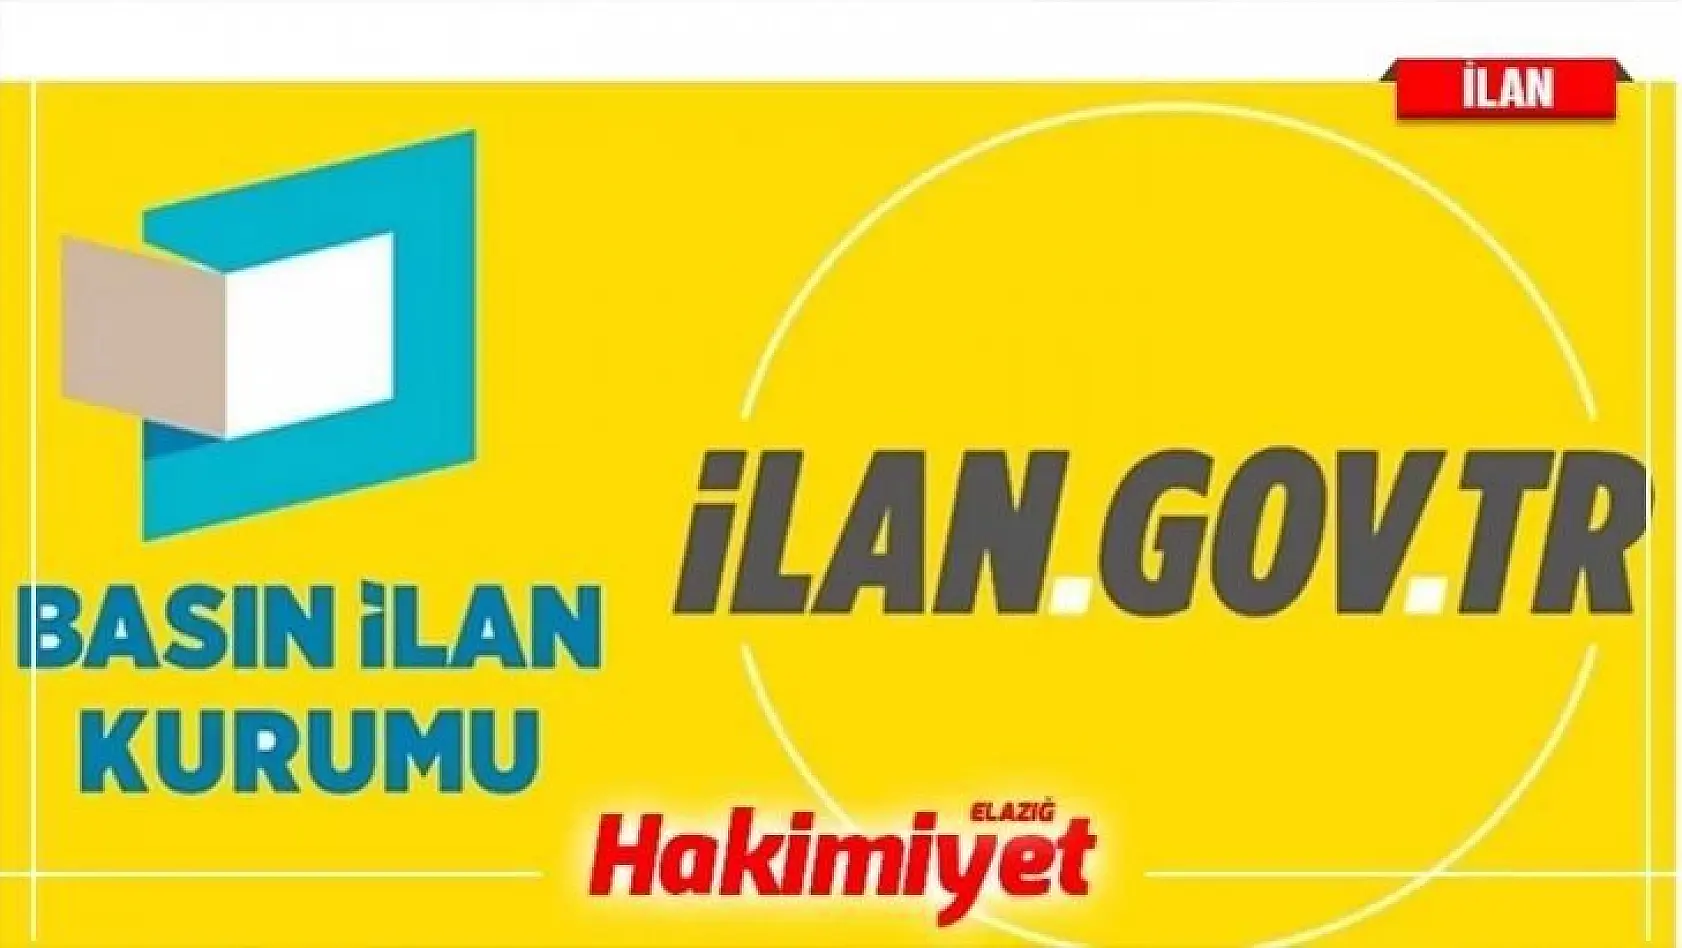 Ankara Hacı Bayram Veli Üniversitesi Öğretim Görevlisi alım ilanı